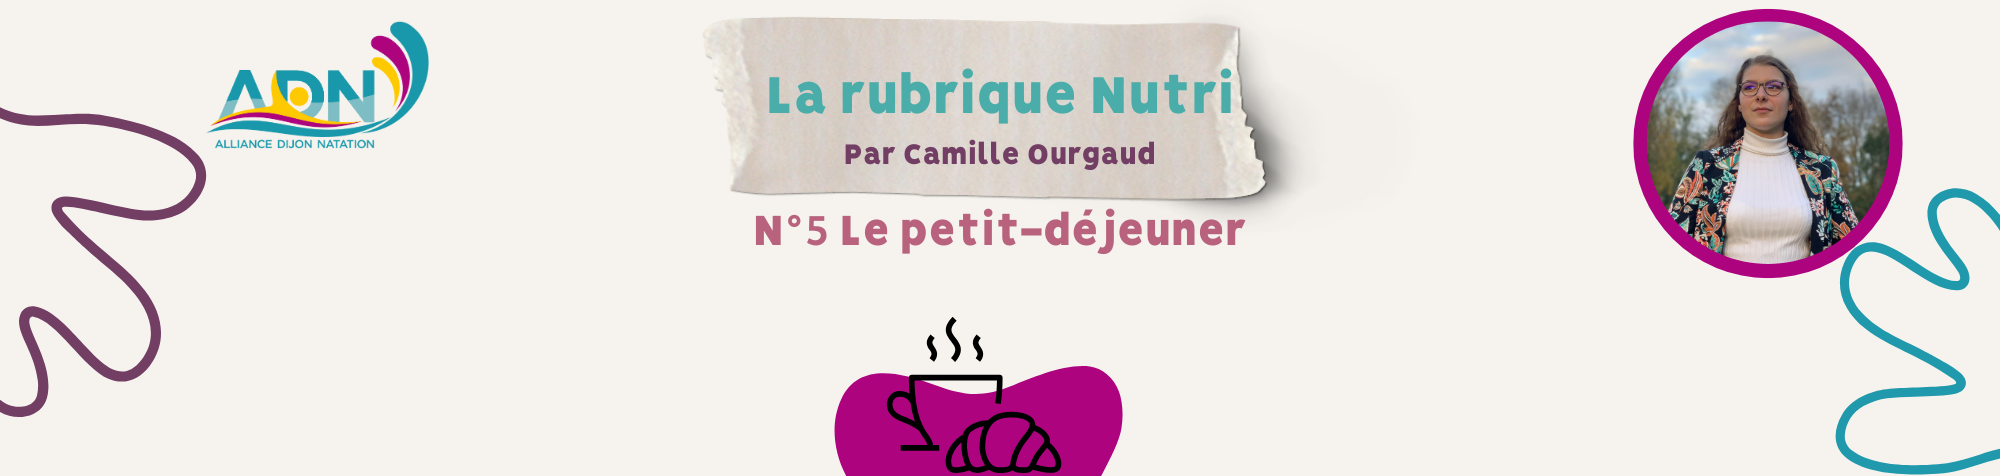 Rubrique nutri 5 site